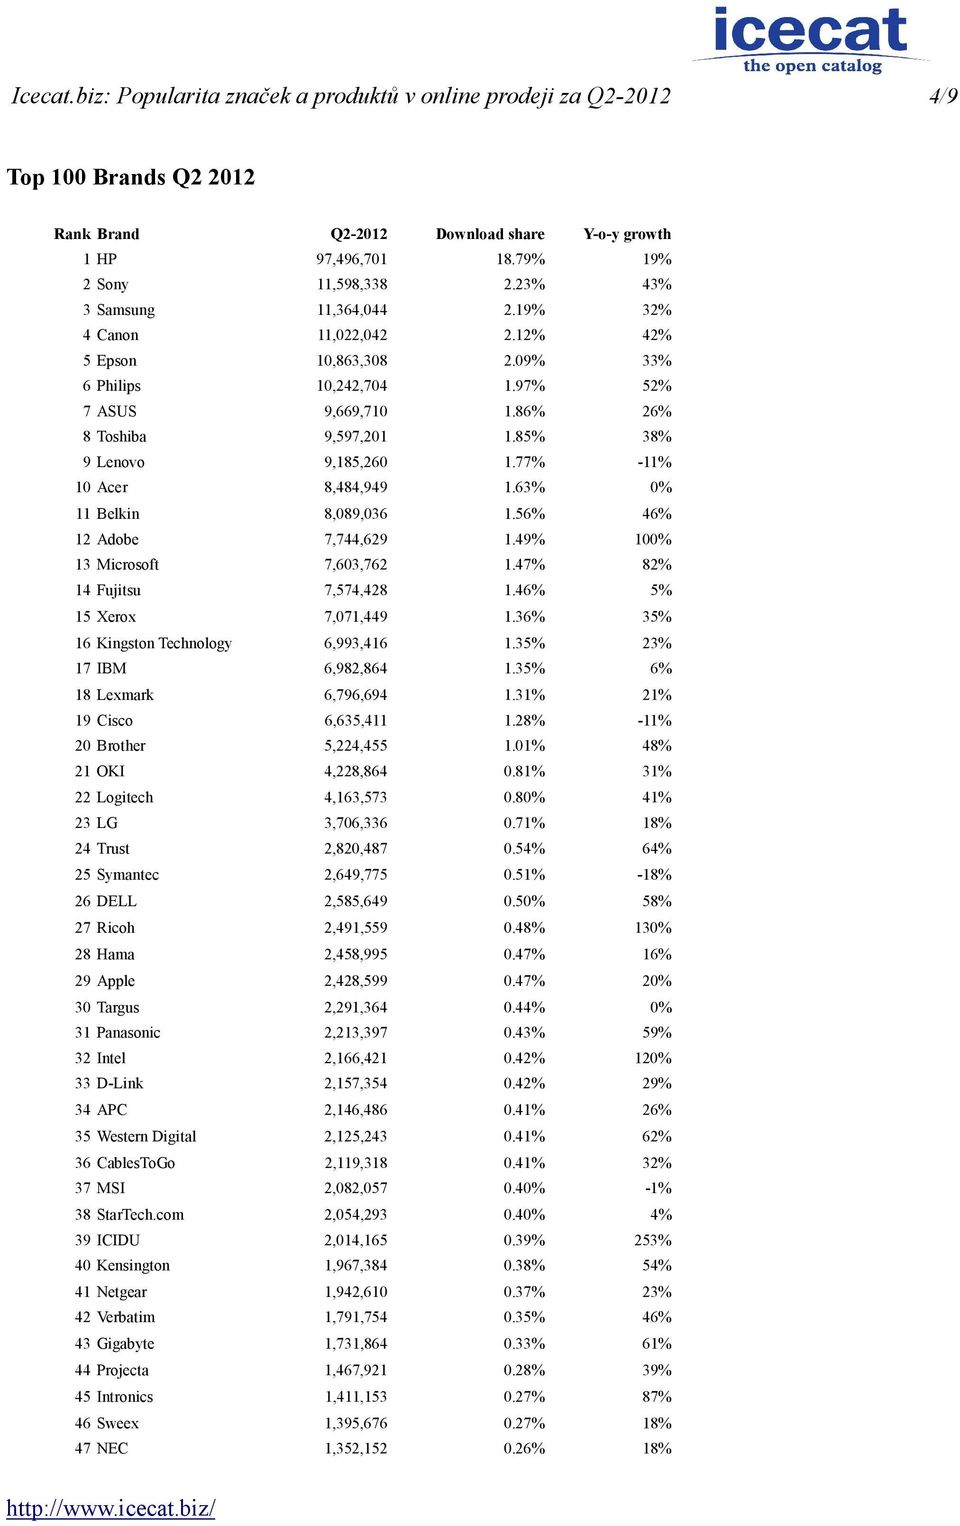 85% 38% 9 Lenovo 9,185,260 1.77% -11% 10 Acer 8,484,949 1.63% 0% 11 Belkin 8,089,036 1.56% 46% 12 Adobe 7,744,629 1.49% 100% 13 Microsoft 7,603,762 1.47% 82% 14 Fujitsu 7,574,428 1.